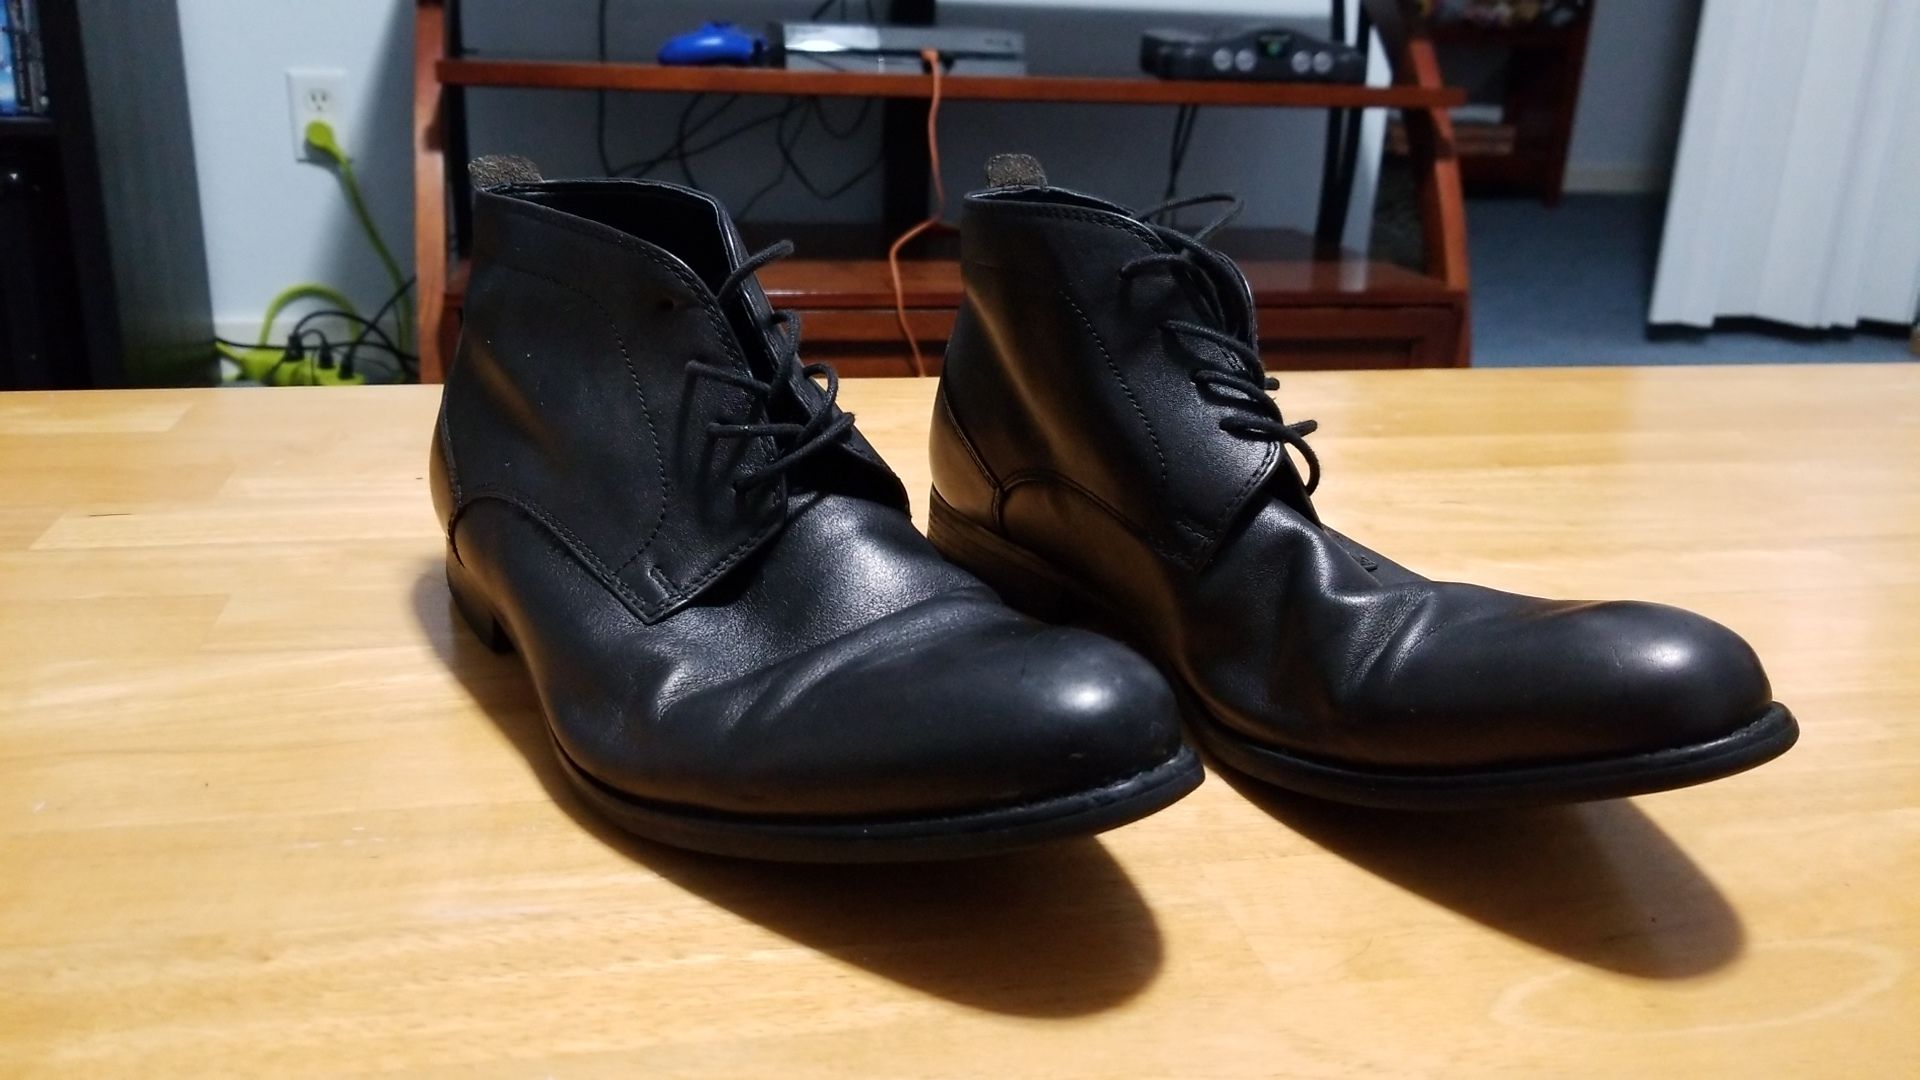 Aldo Black Dress Boots size 9 men's